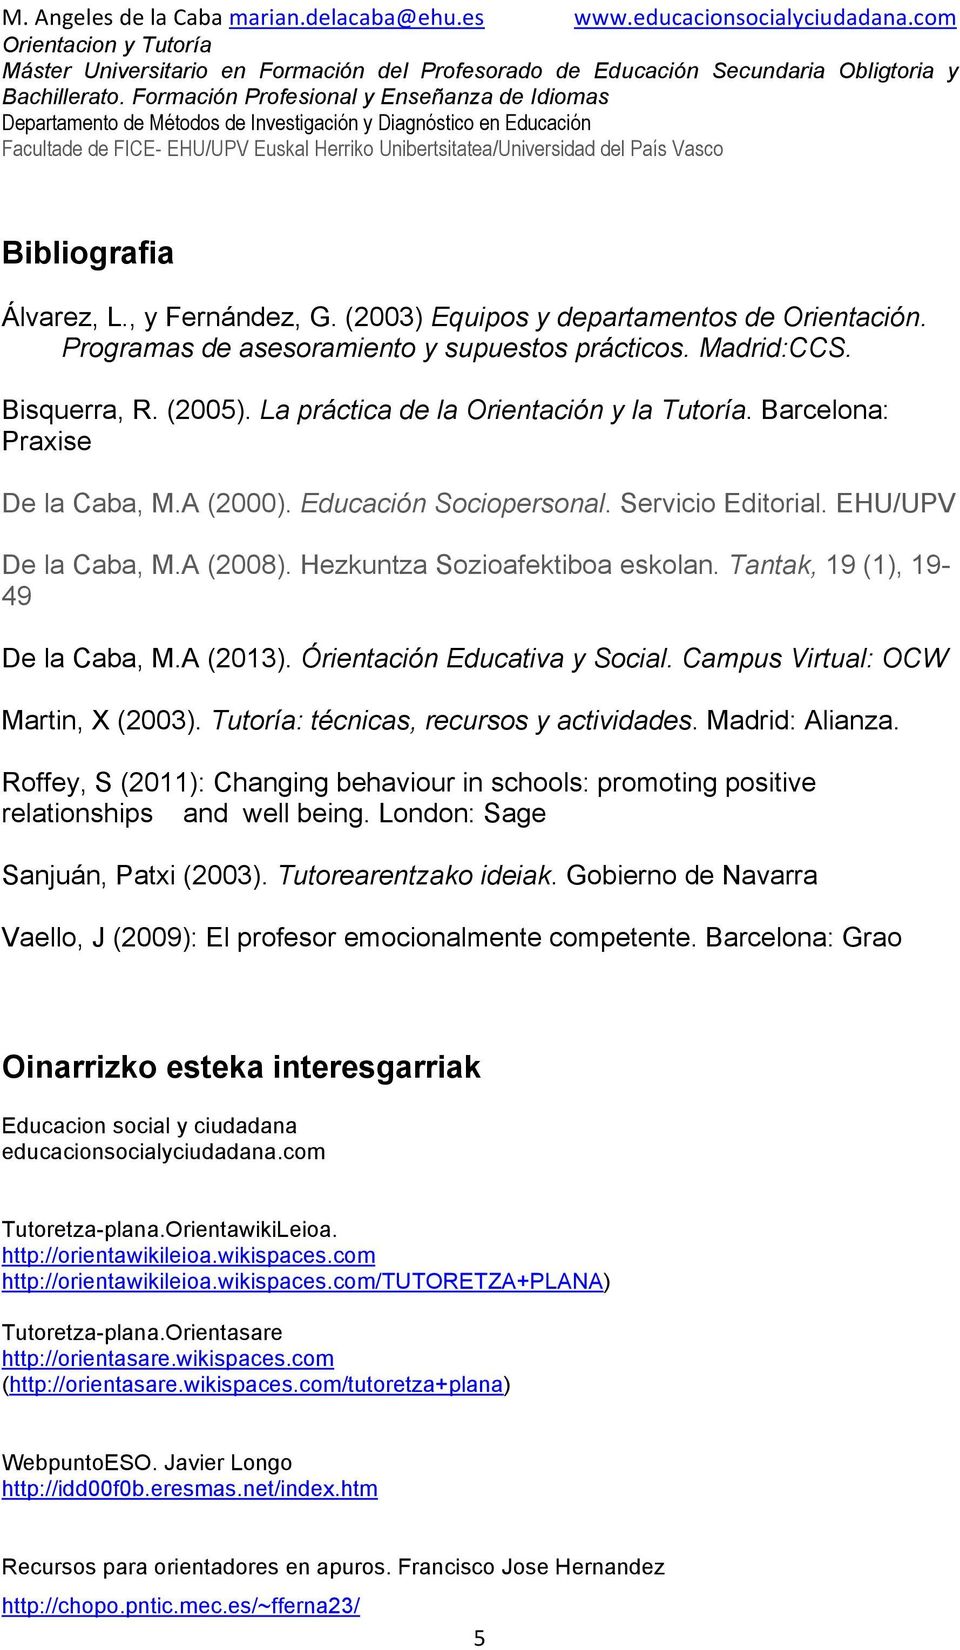 Tantak, 19 (1), 19-49 De la Caba, M.A (2013). Órientación Educativa y Social. Campus Virtual: OCW Martin, X (2003). Tutoría: técnicas, recursos y actividades. Madrid: Alianza.